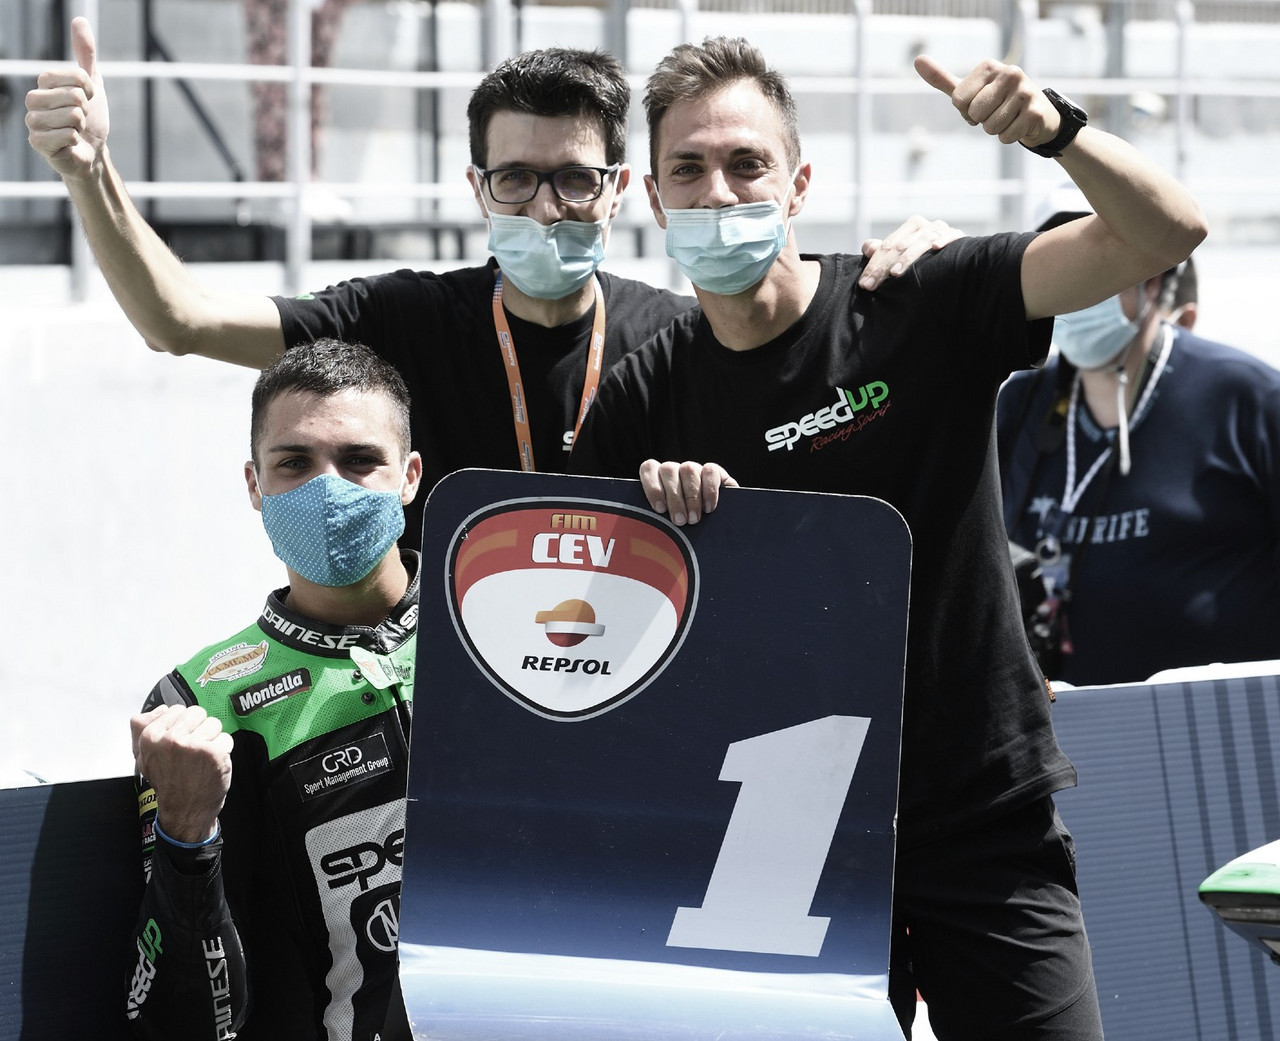 Yari Montella a un paso de proclamarse Campeón de Moto2 